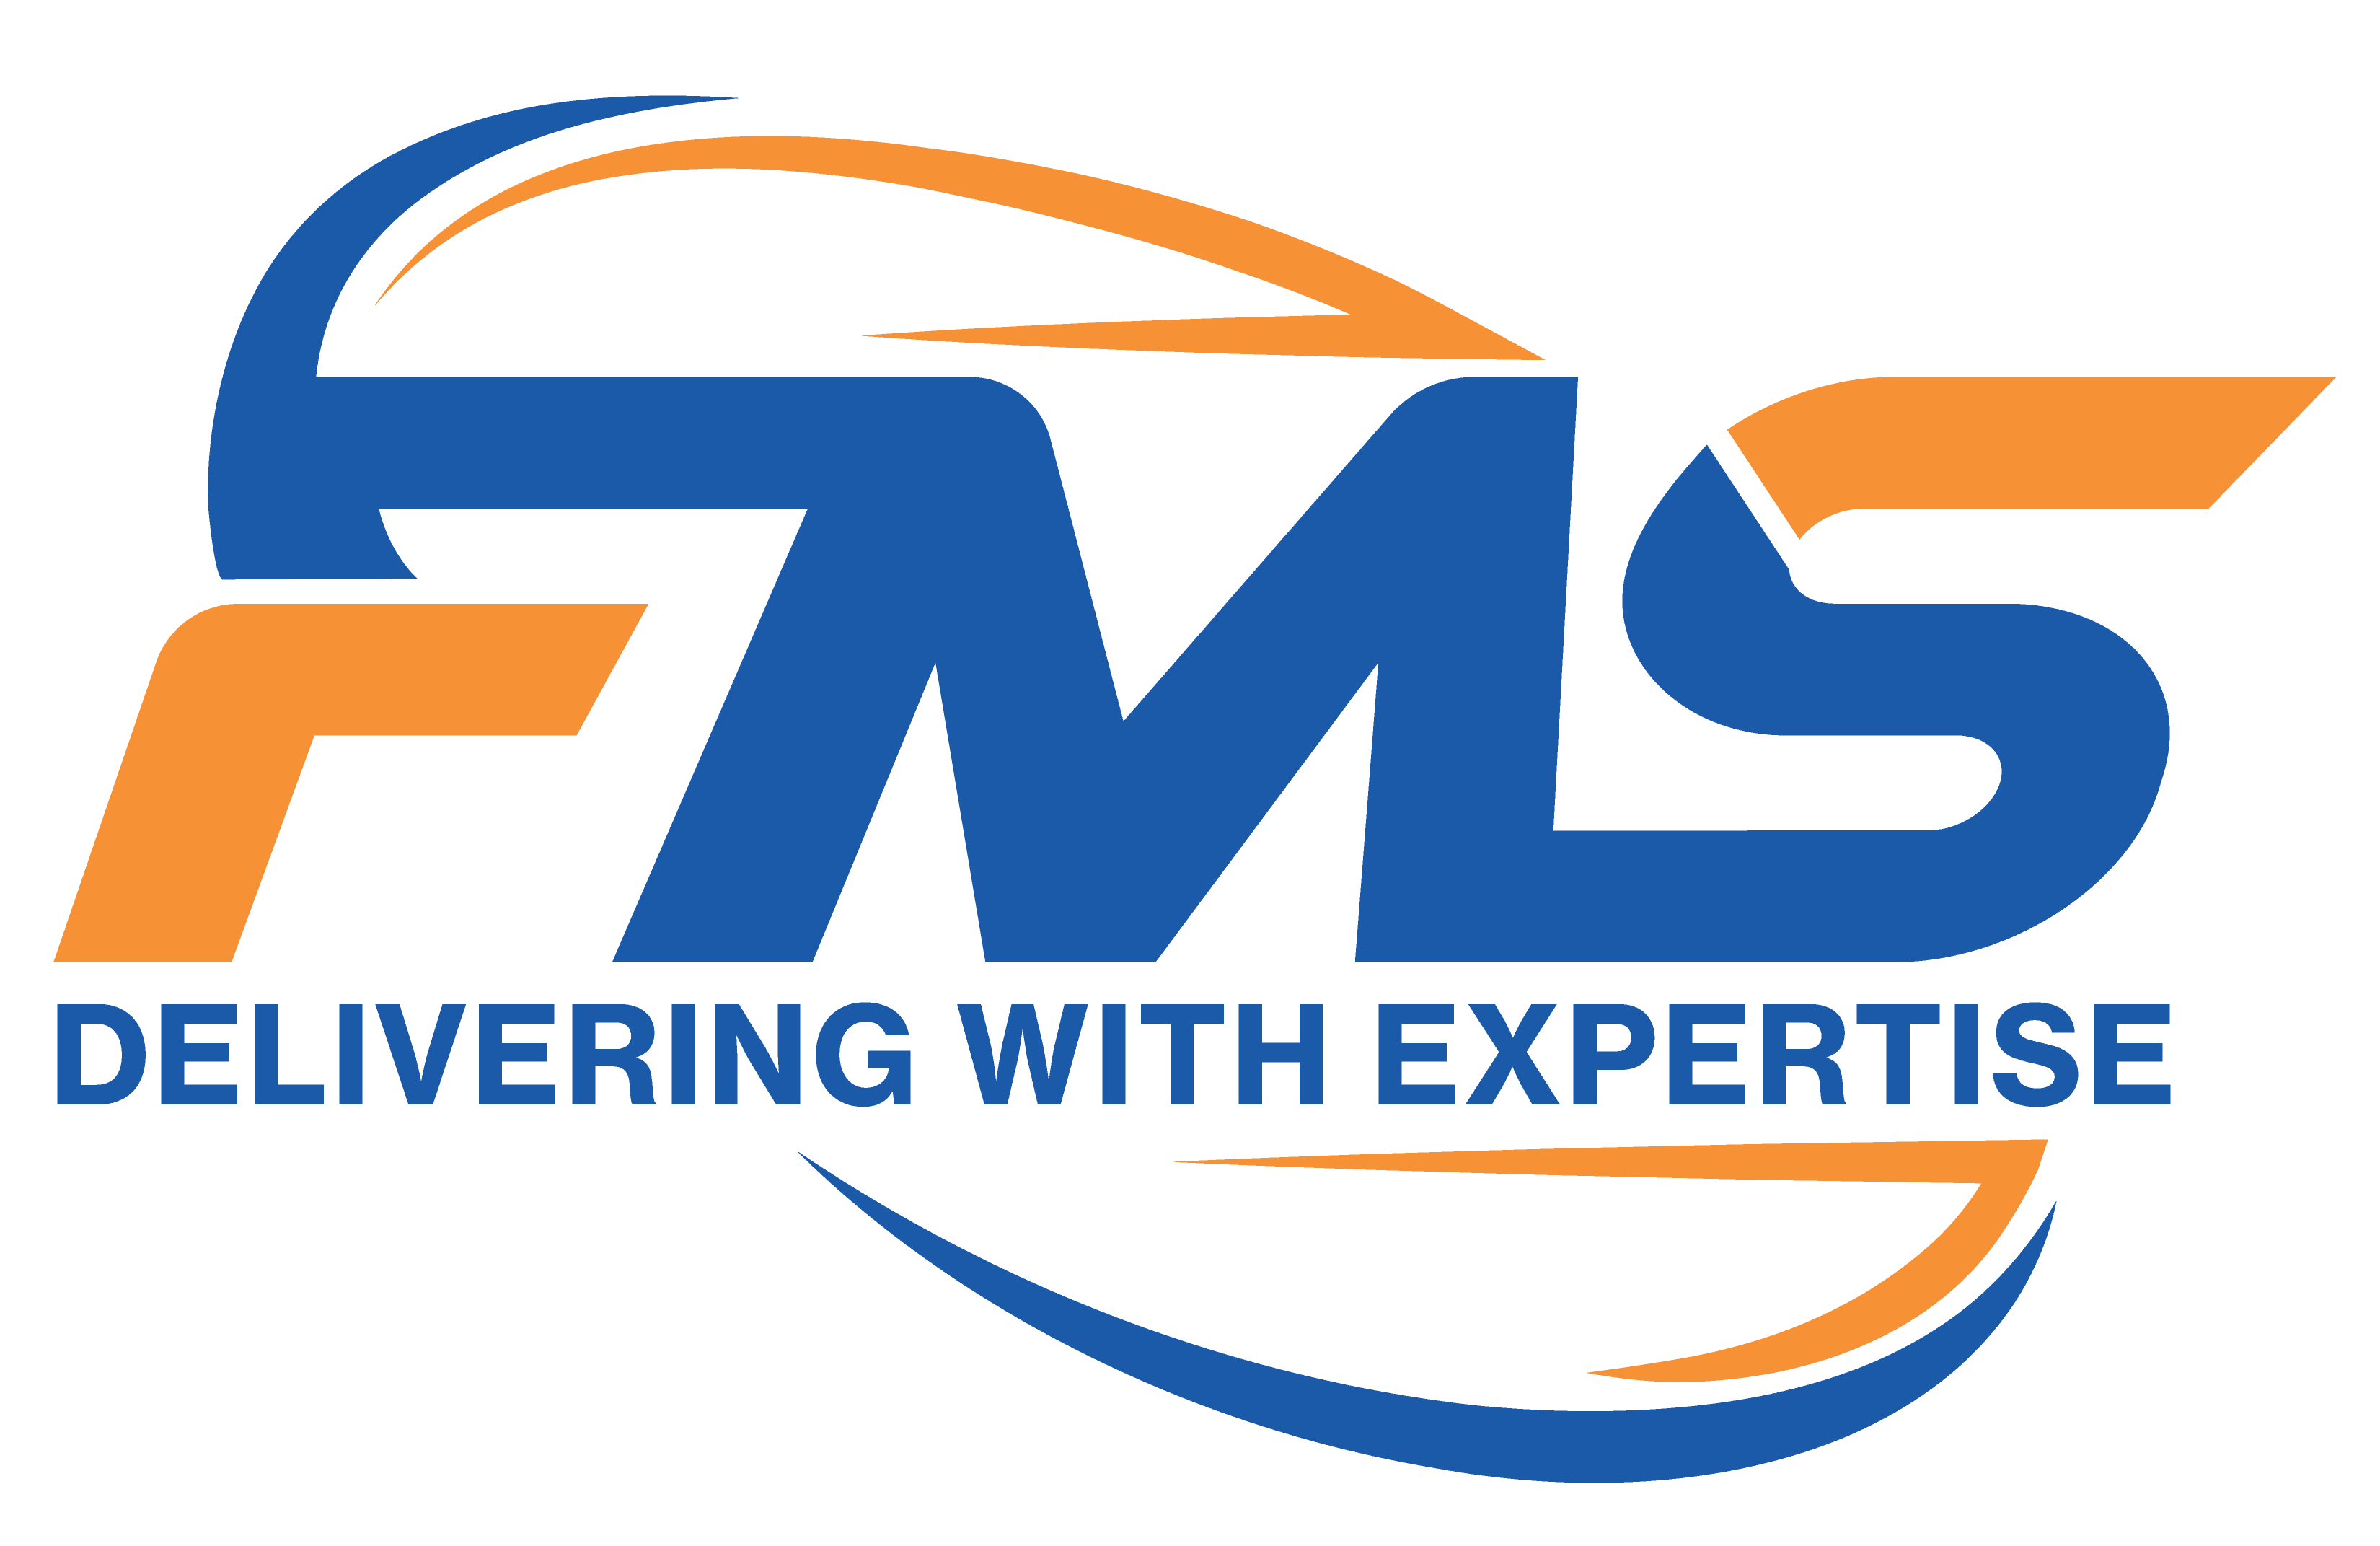 fms logo